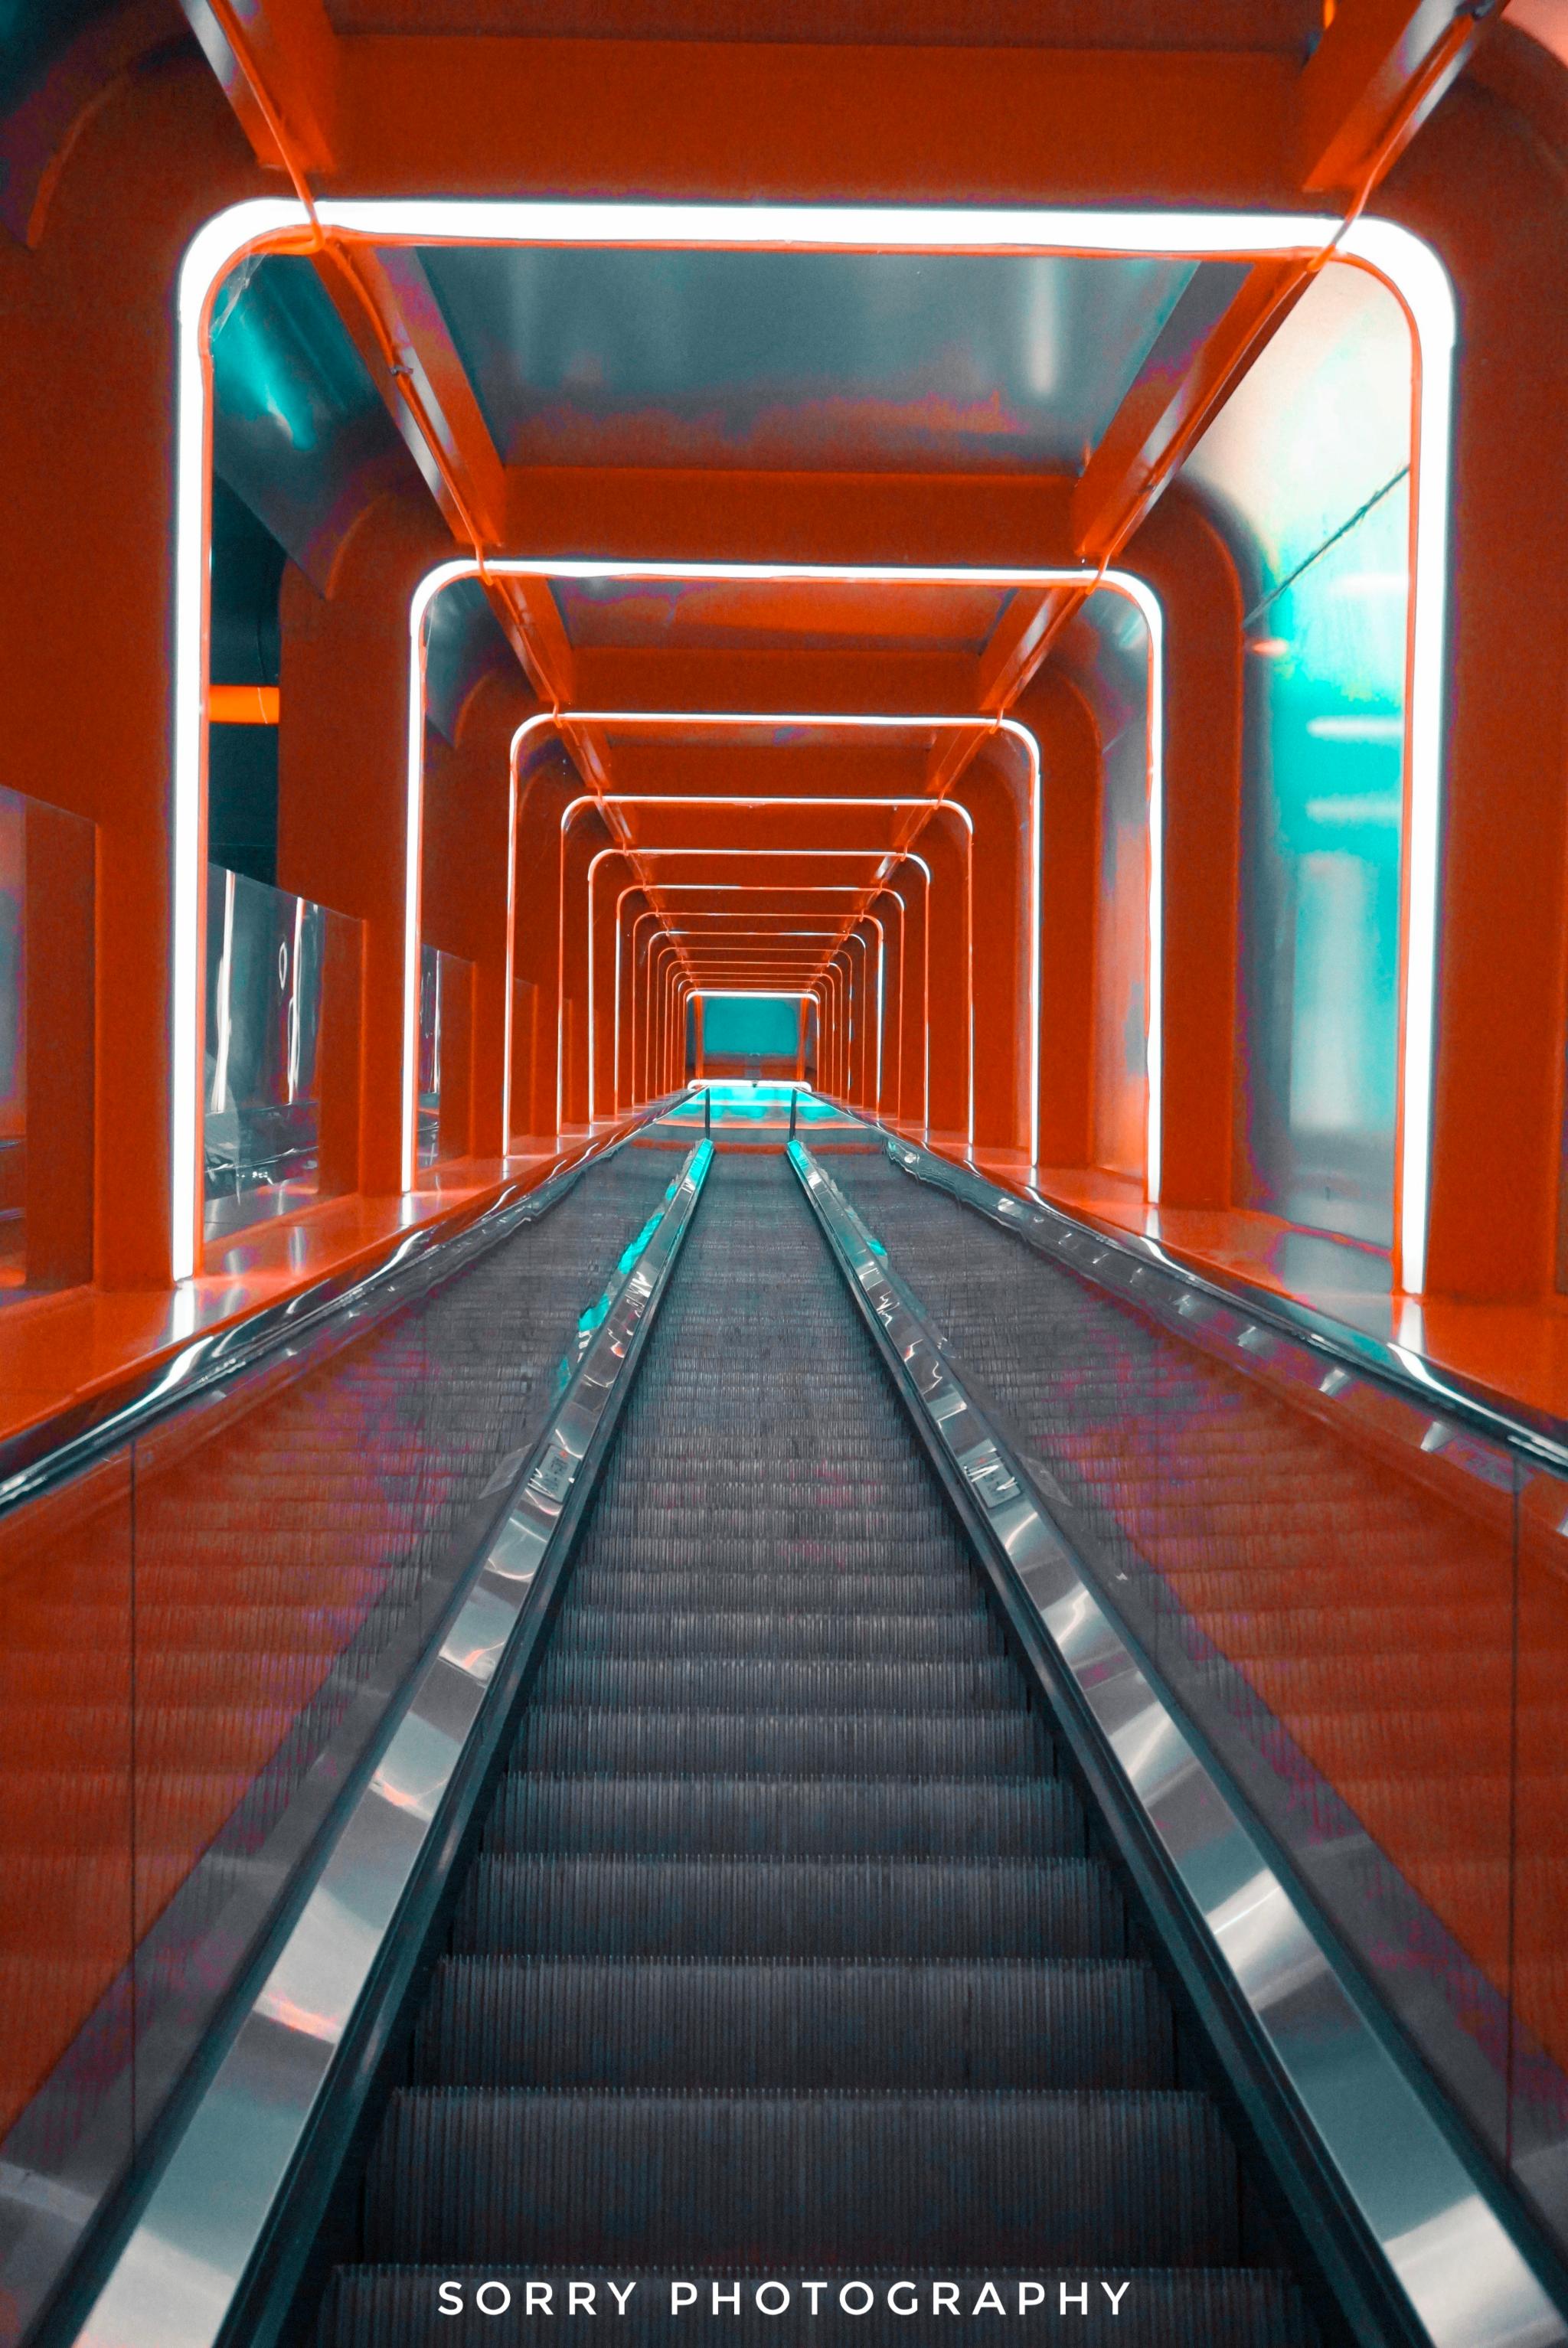 梯外, 重庆 还有一个超适合看夜景,颇具科技感的时光隧道扶梯——朝天